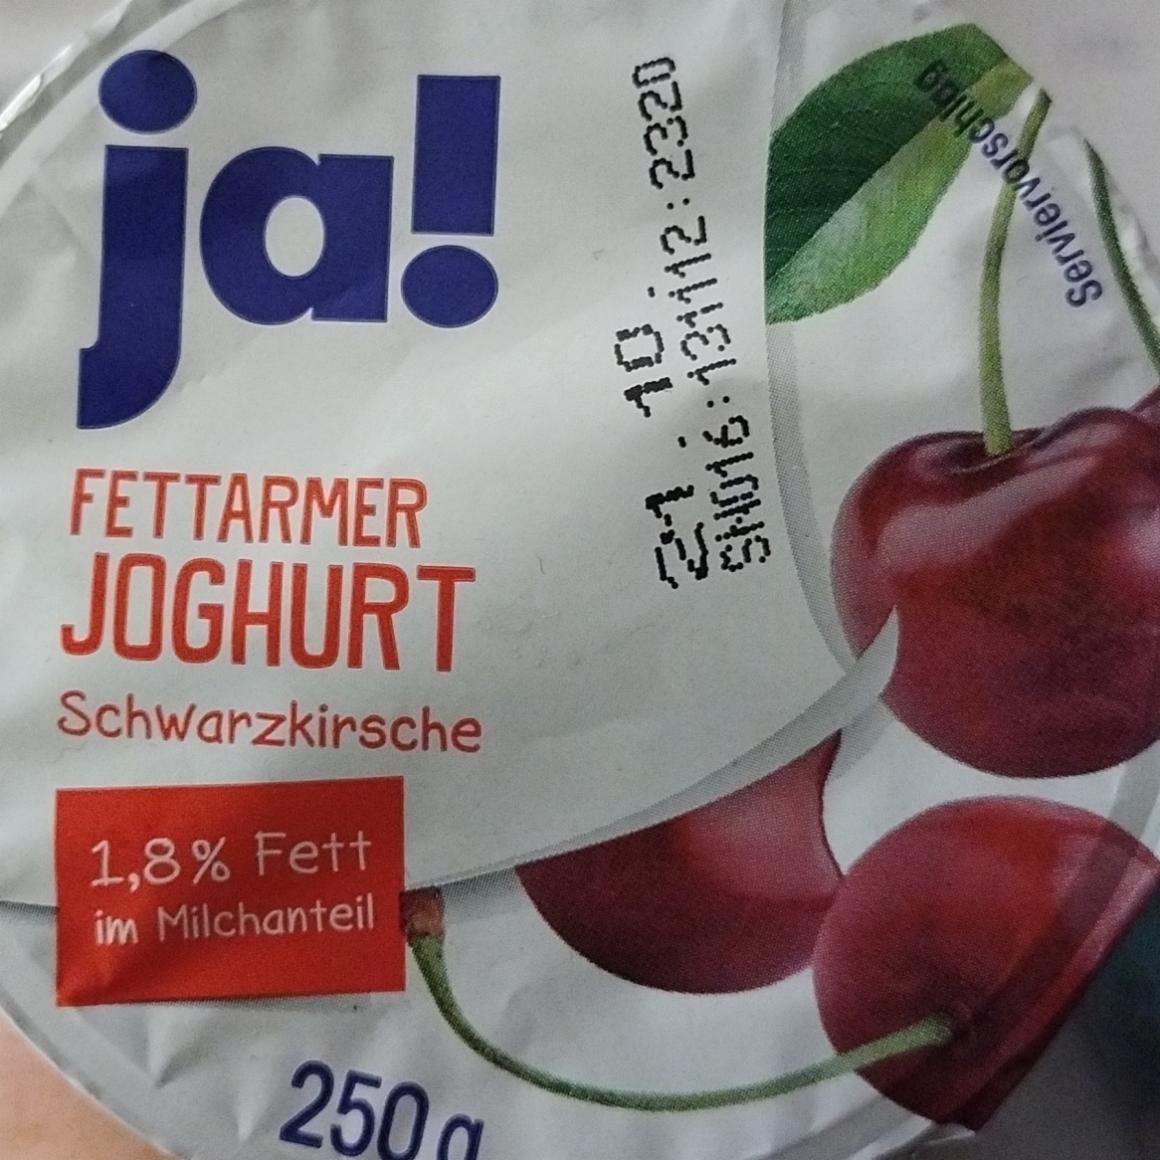 Fotografie - Fettarmer Joghurt Schwarzkirsche 1,8% Fett im Milchanteil Ja!